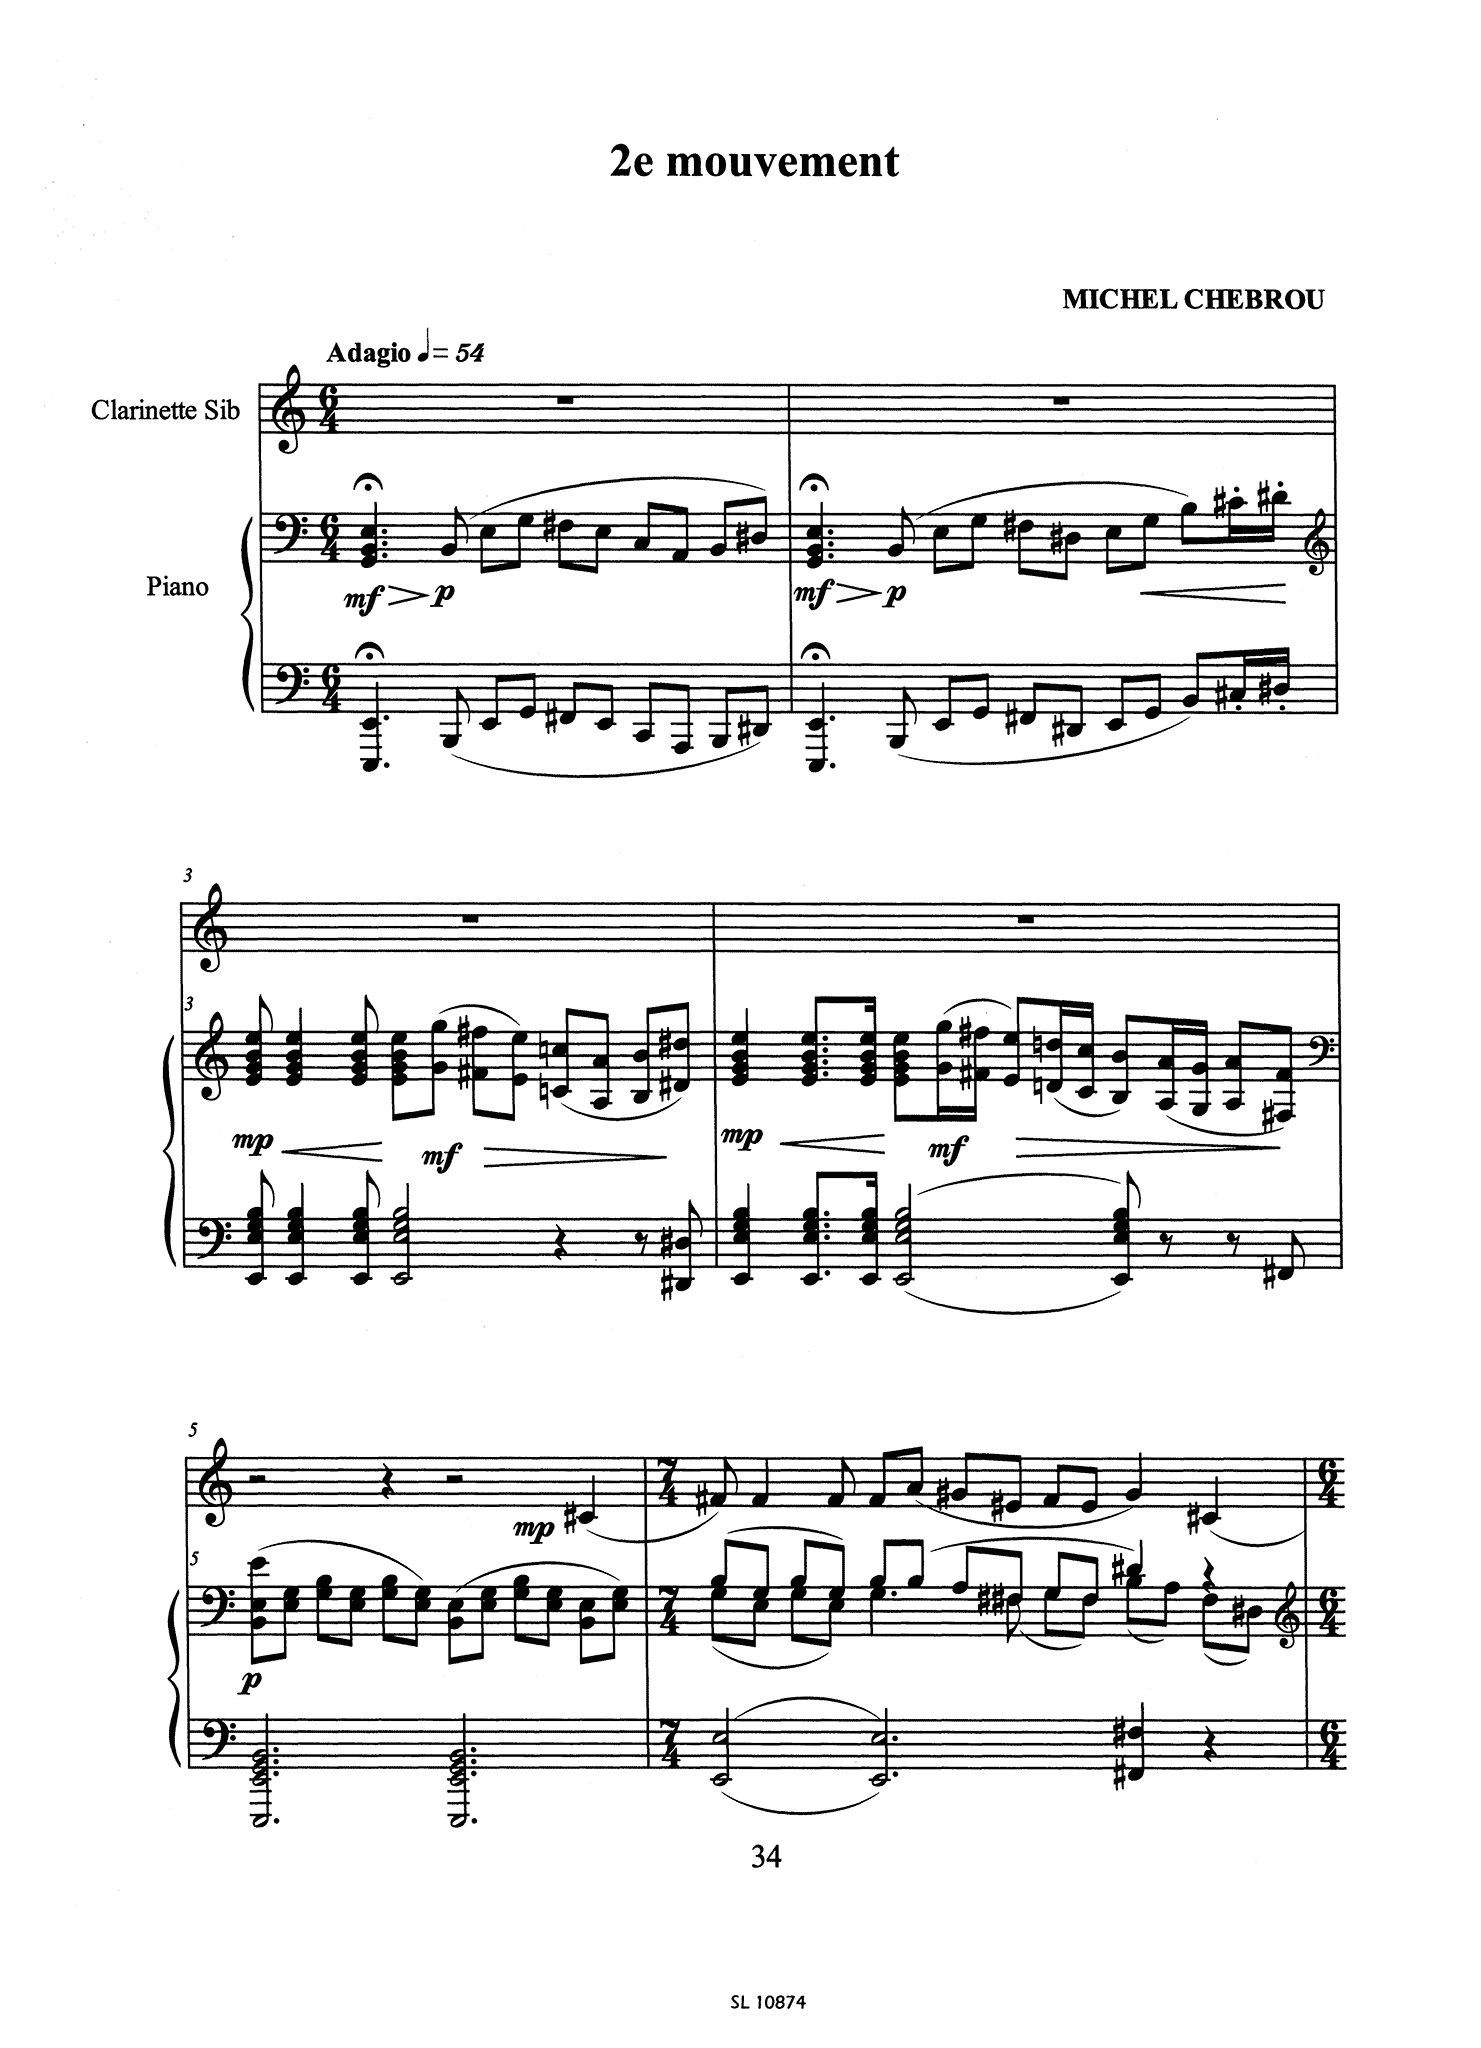 Chebrou Clarinet Concerto - Movement 2